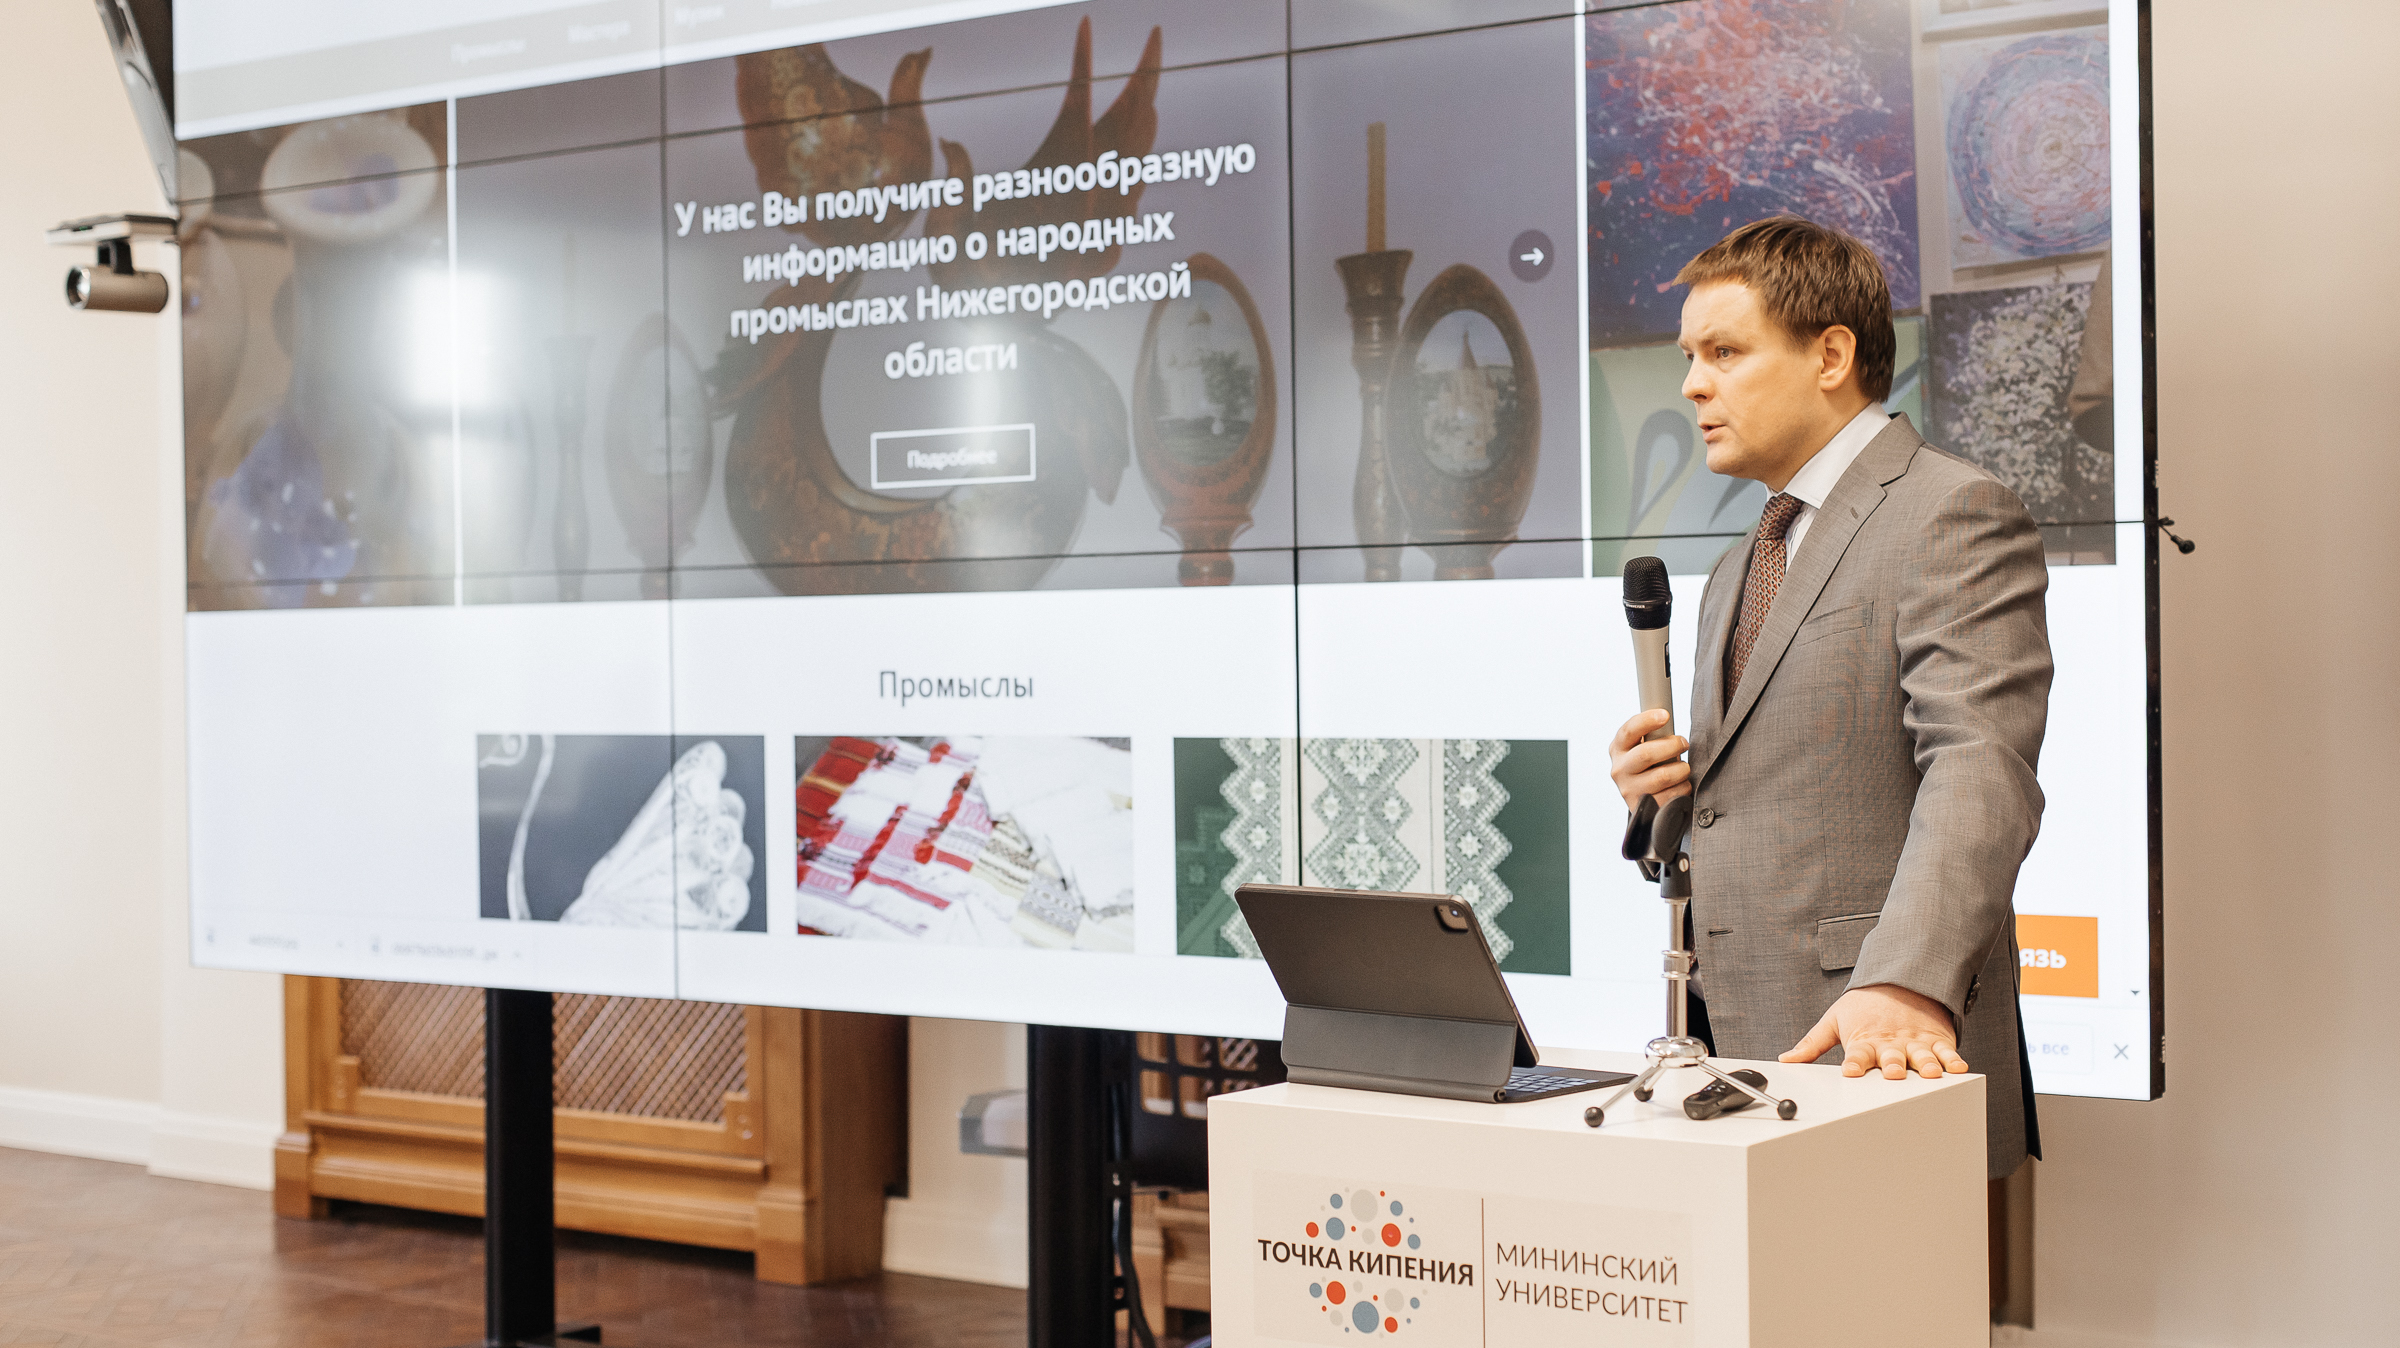 Мининский университет планирует создать маркетплейс для мастеров и Ремесленный квартал в Нижнем Новгороде